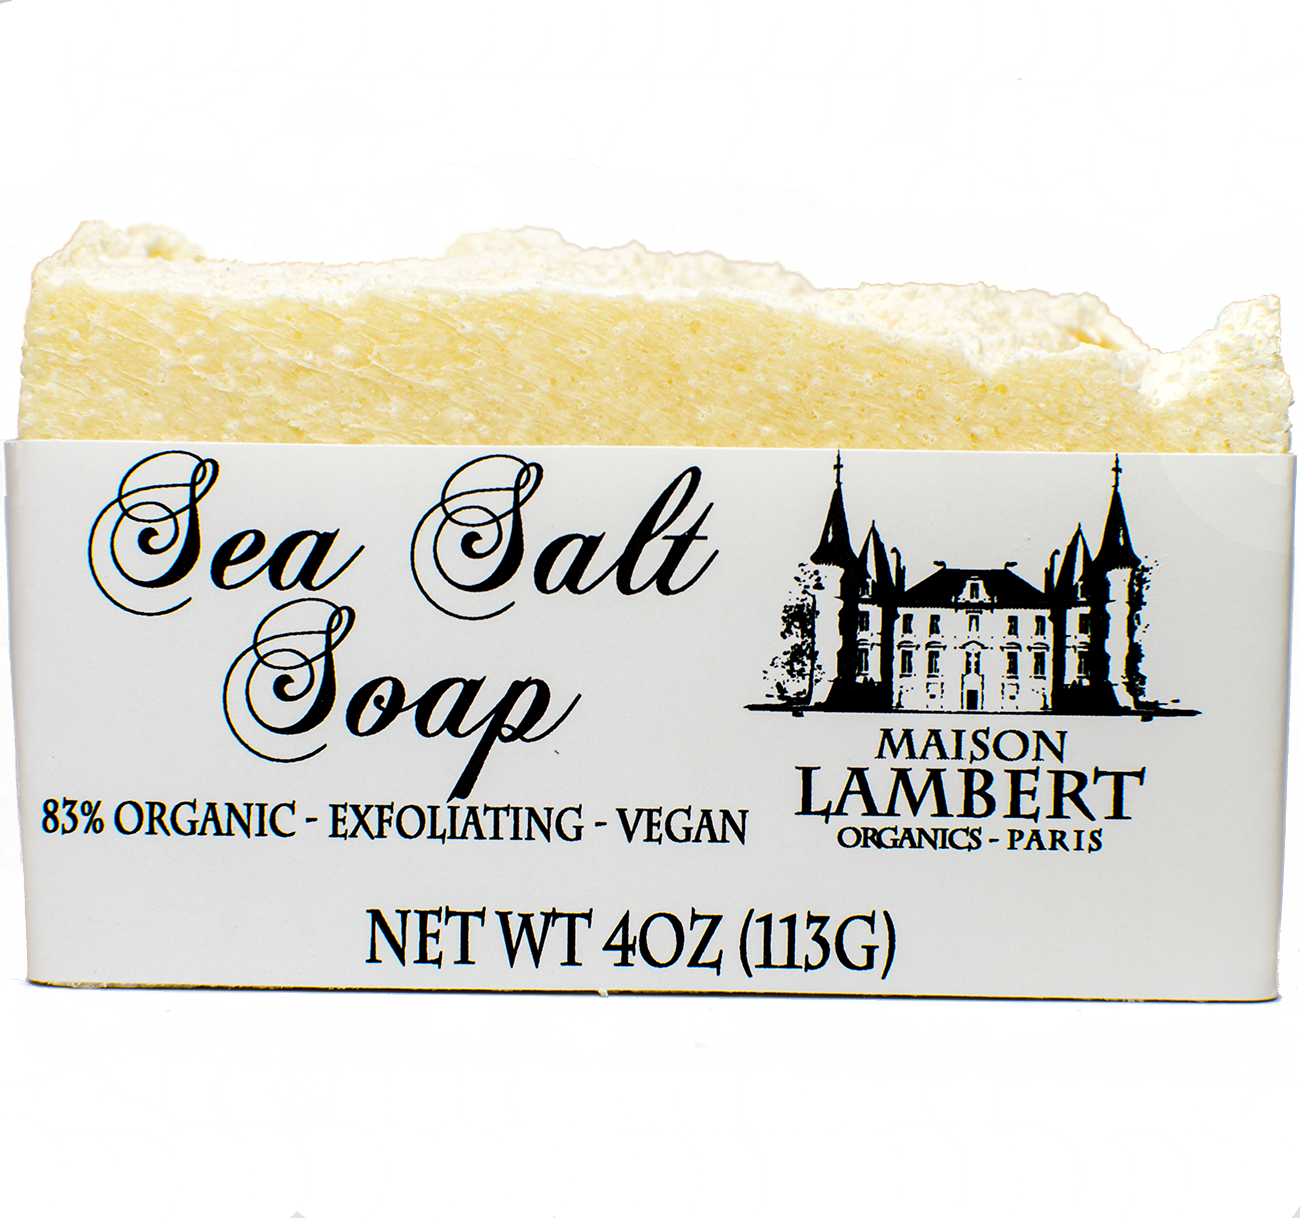 Soap - Organic Sea Salt Soap - Exfoliating, Vegan, All Natural, Handmade